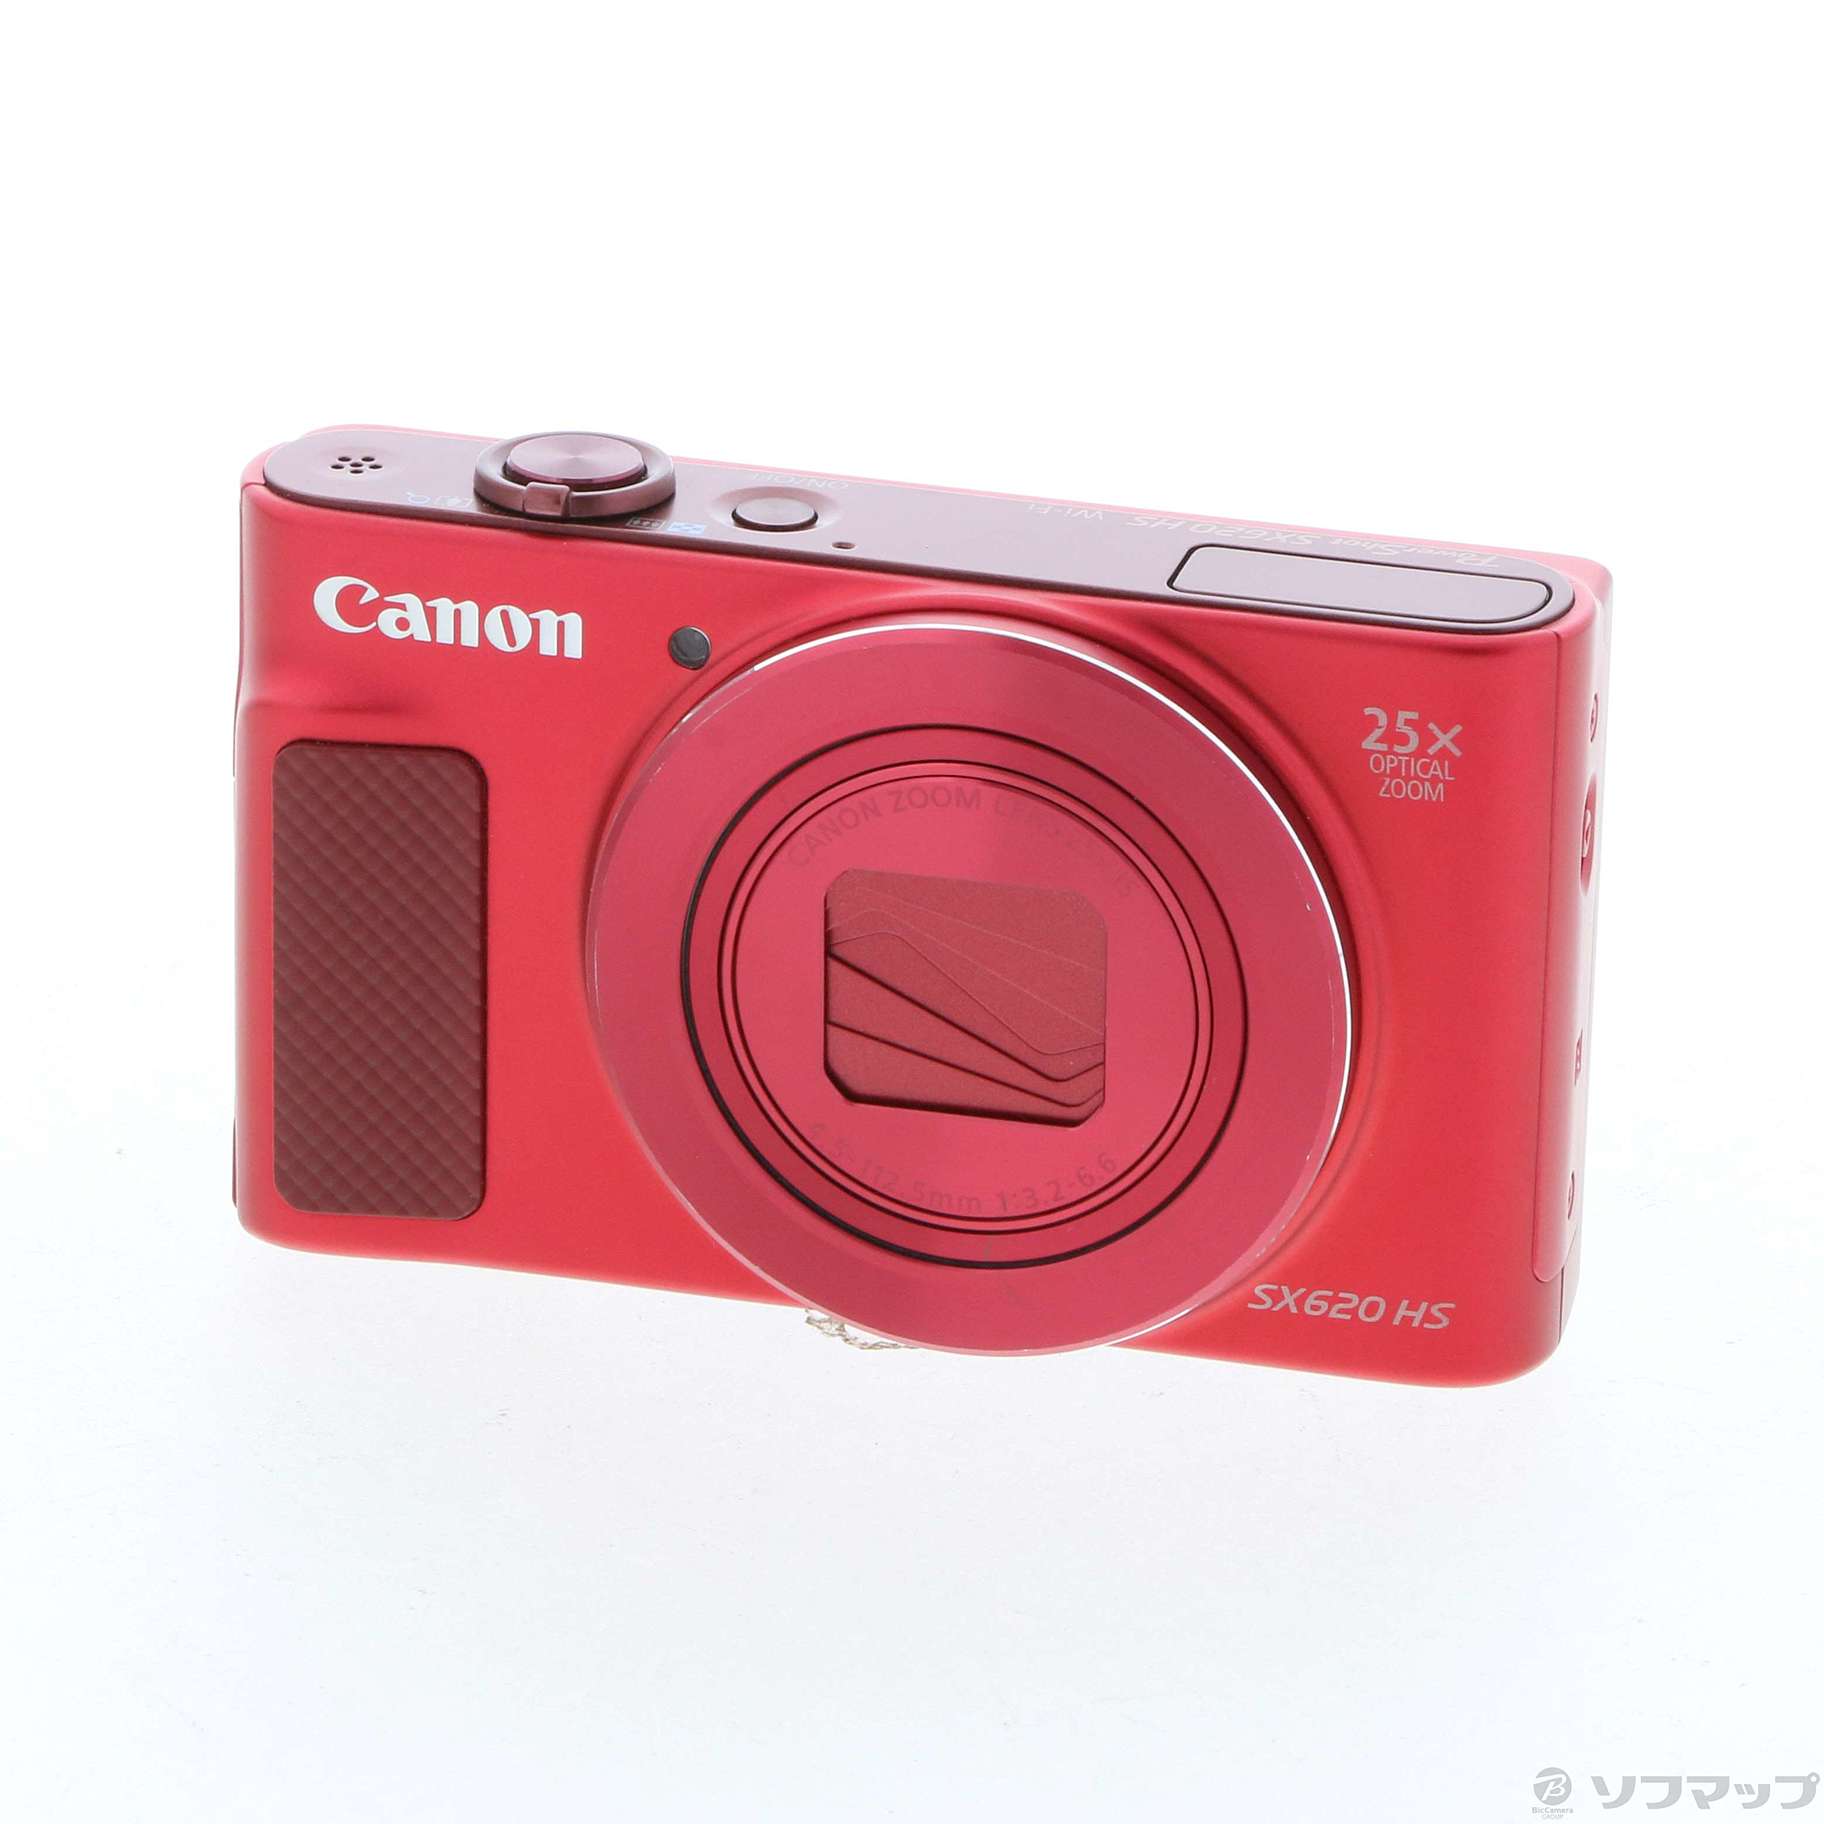 66%OFF!】 Canon コンパクトデジタルカメラ PowerShot SX620 HS